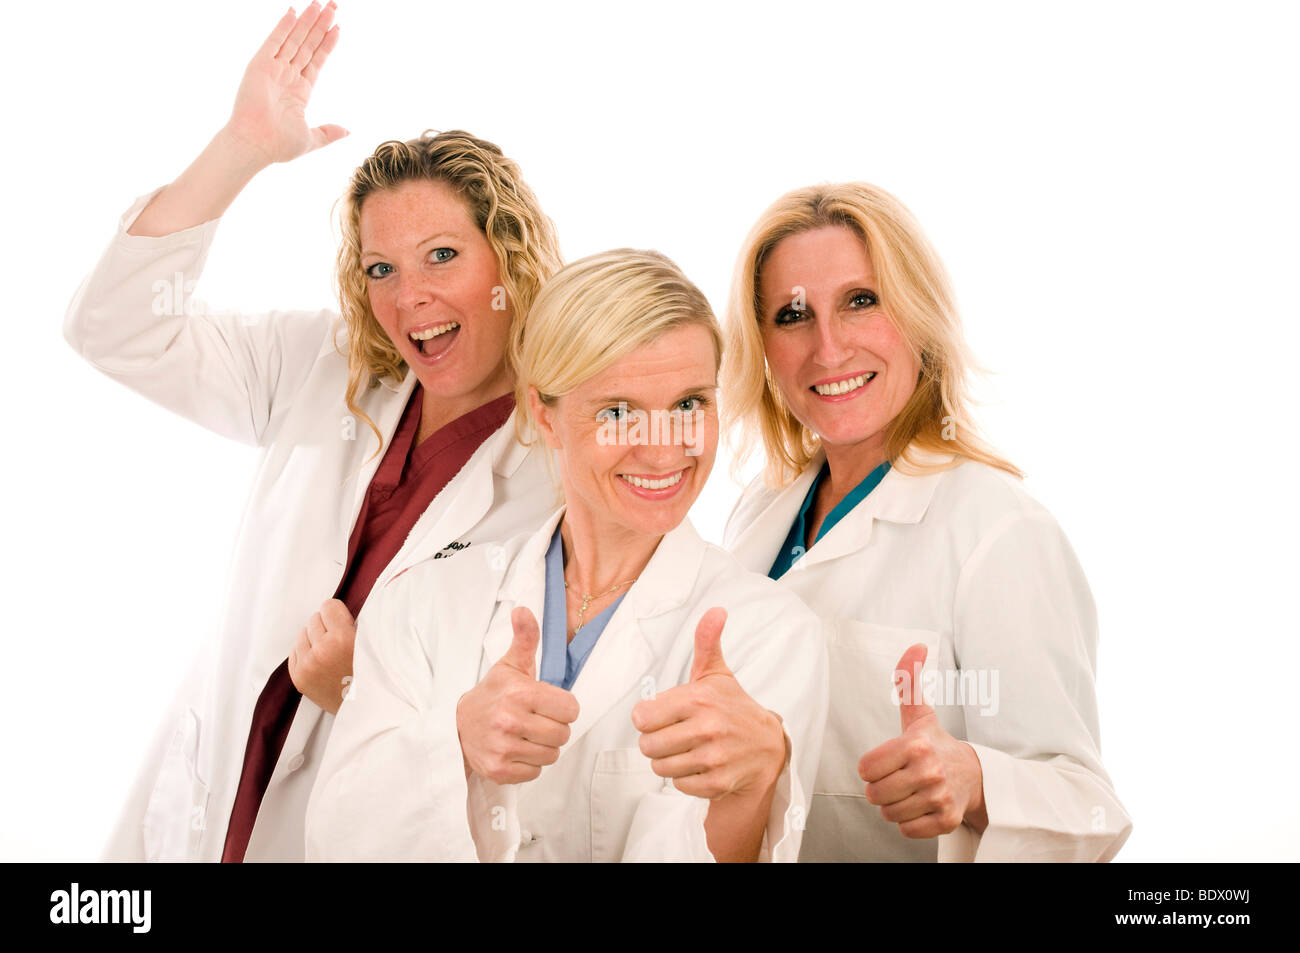 L'infermiera infermieri tre gruppo team lady ladies femmine teamwork piuttosto camici da laboratorio o.r. camicia bianca sorriso positivo sorridente attraente Foto Stock